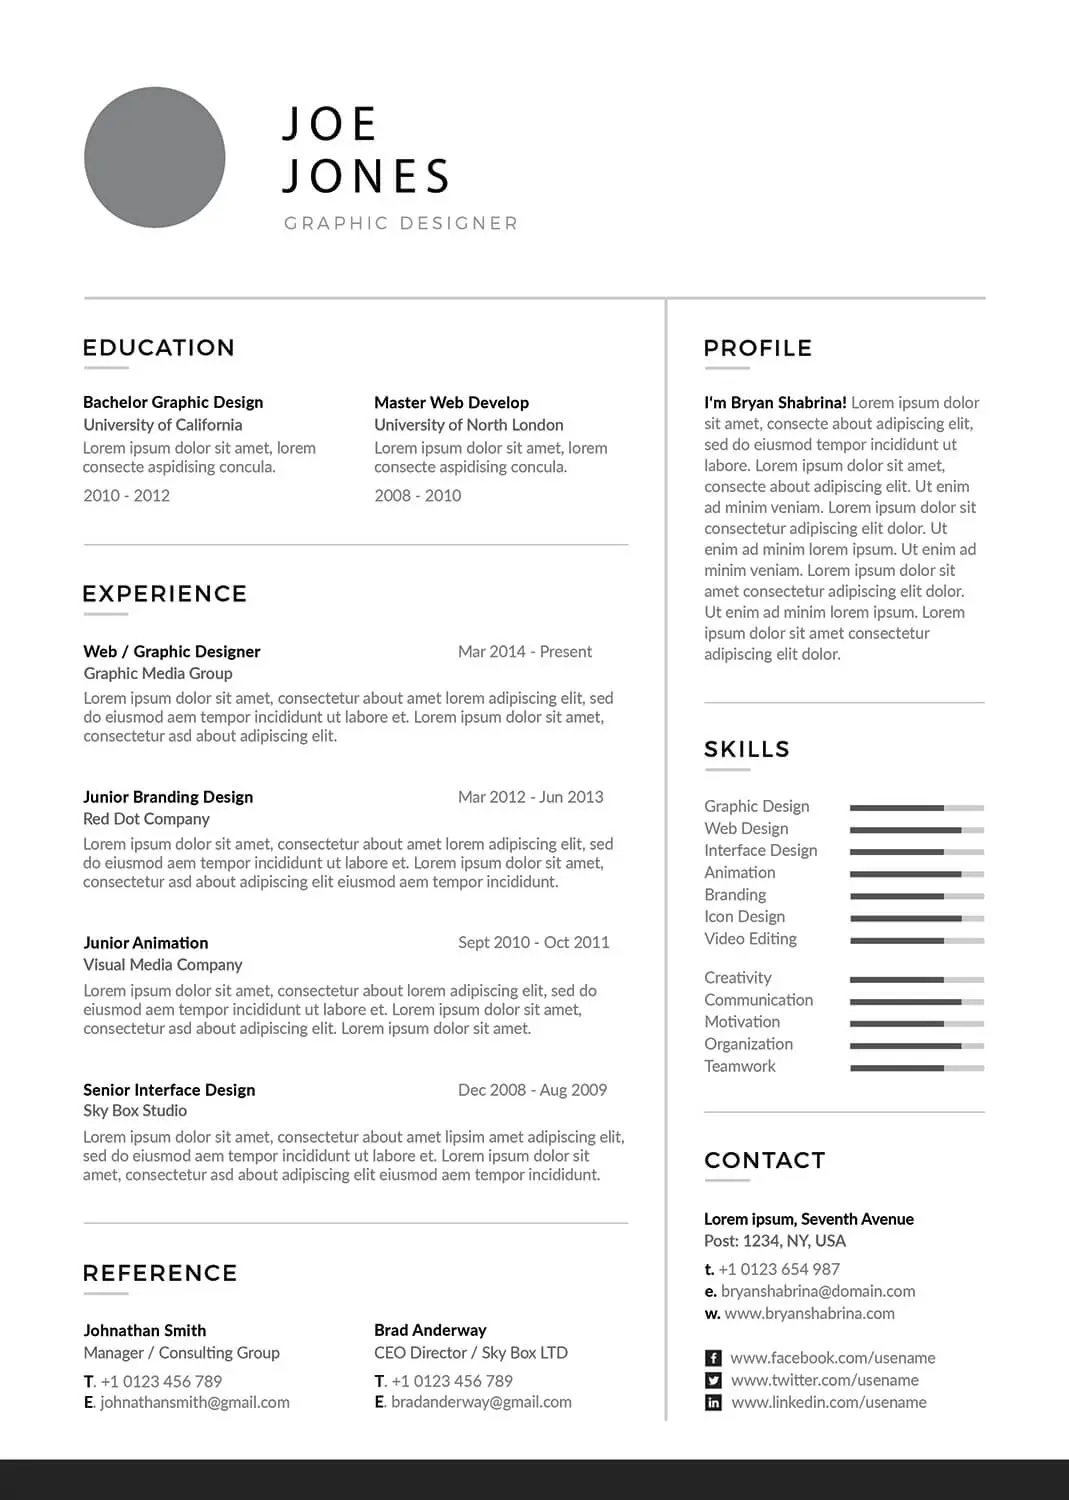 carpenter-resume